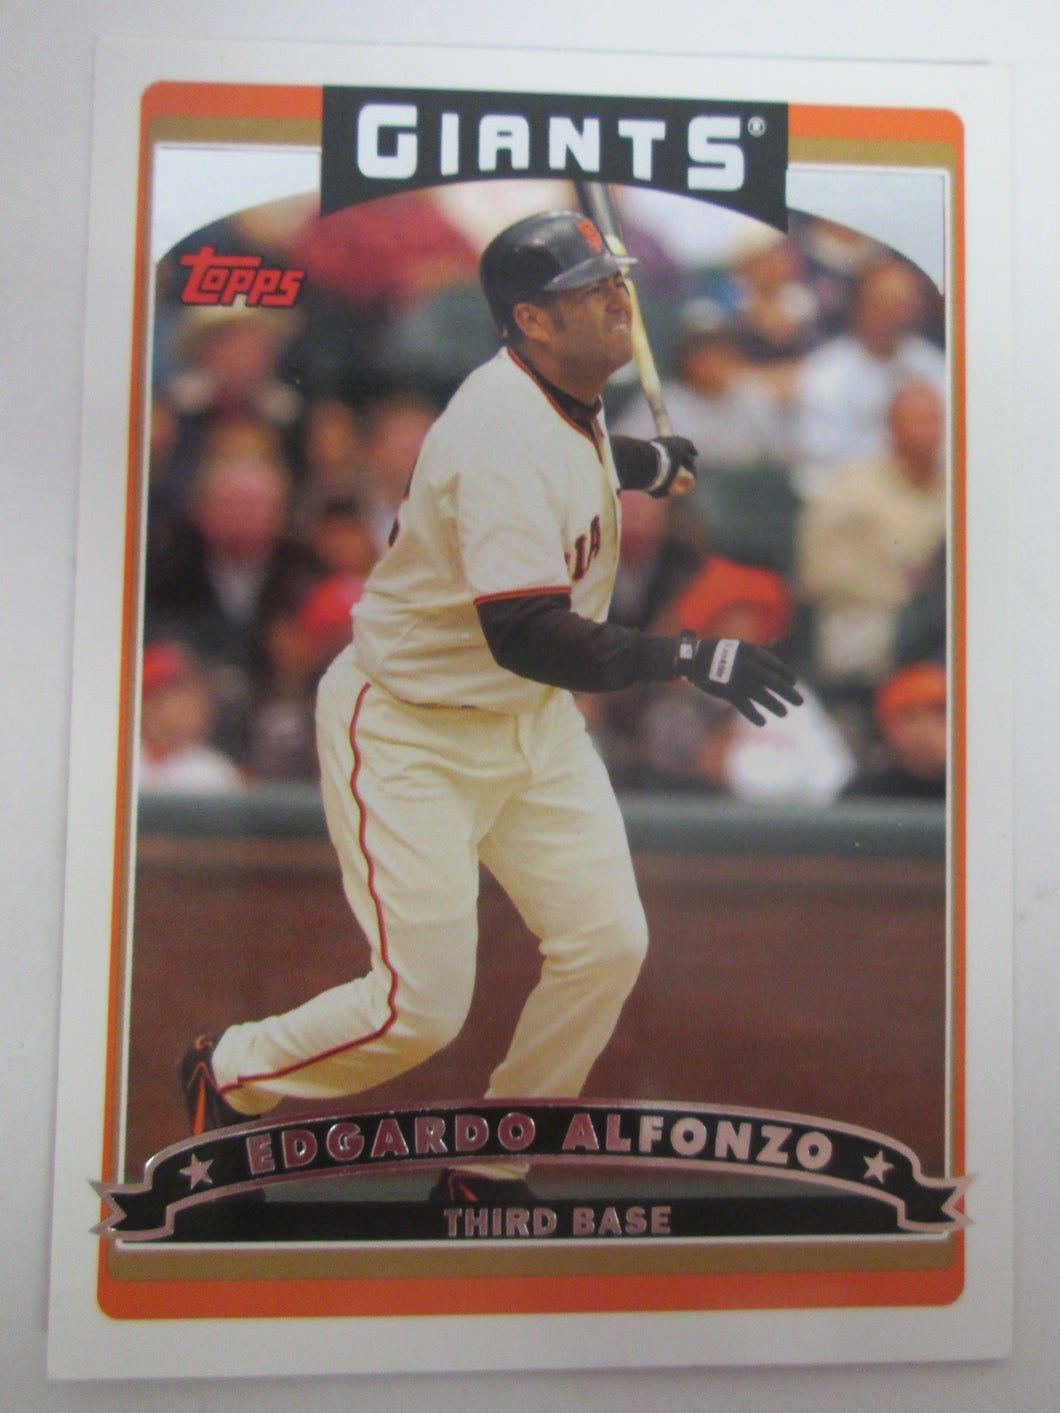 2006 Topps San Francisco Giants Baseball Card # 206 Edgardo Alfonzo